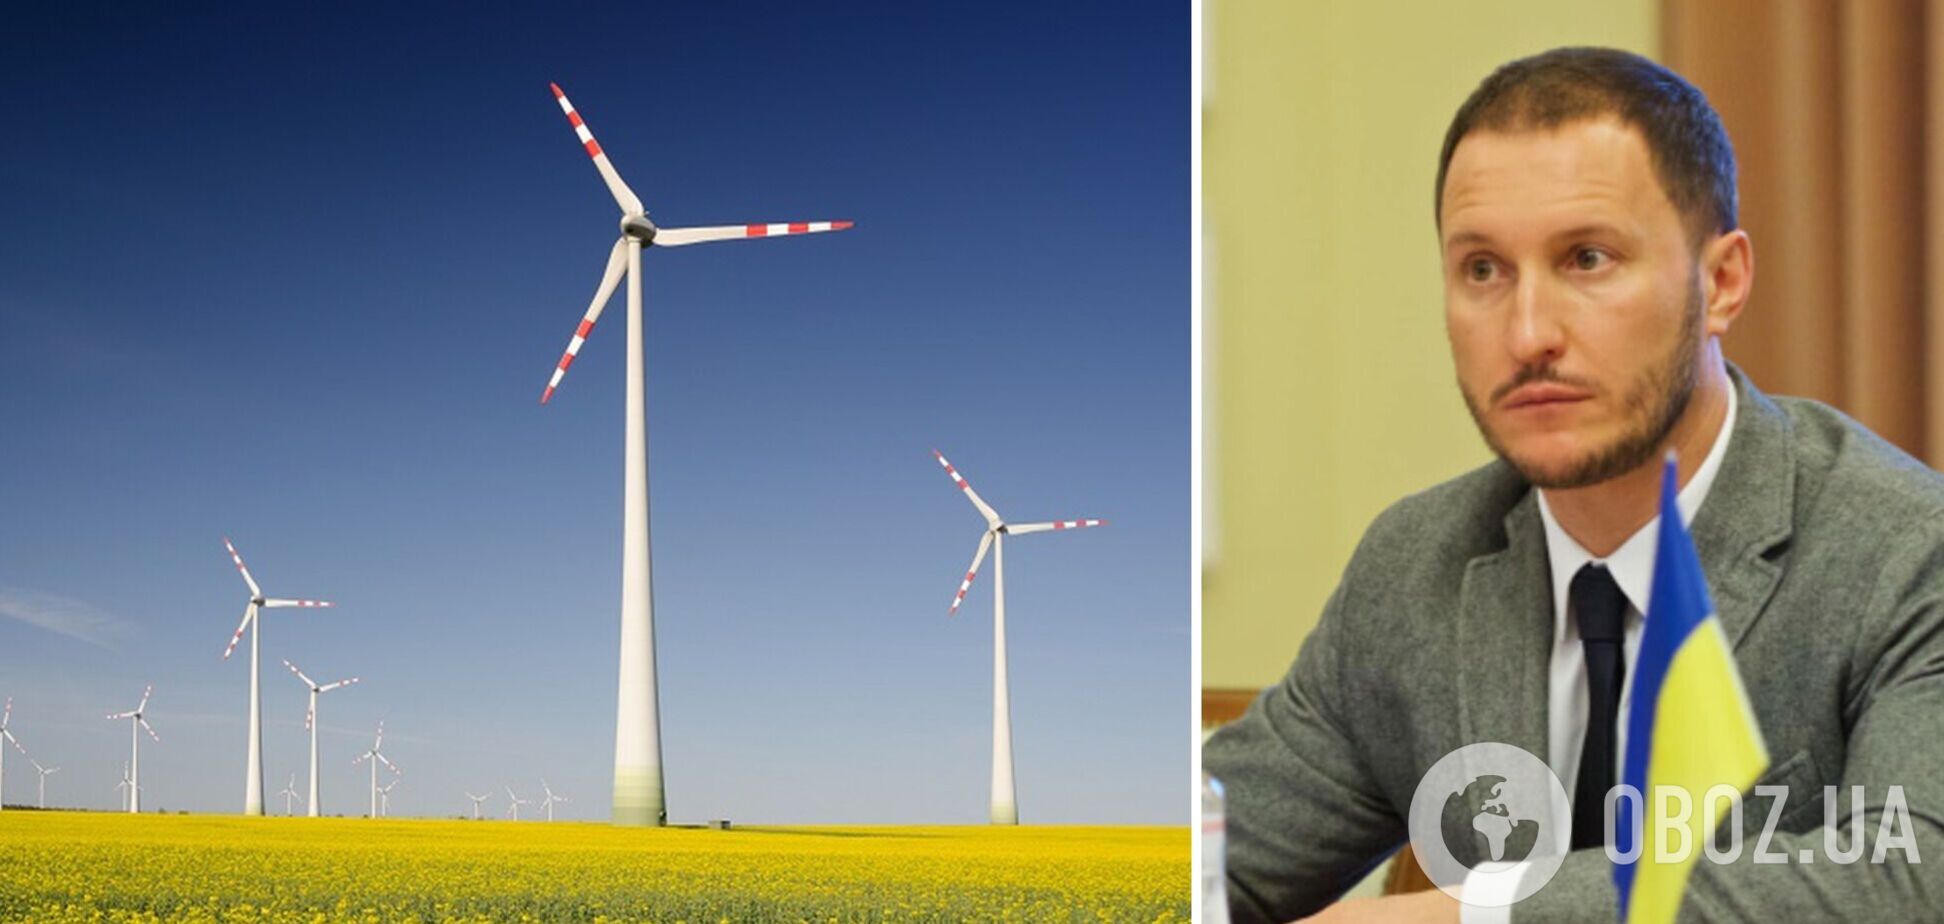 Вітроенергетика може вивести Україну в лідери використання ВДЕ – Міненерго